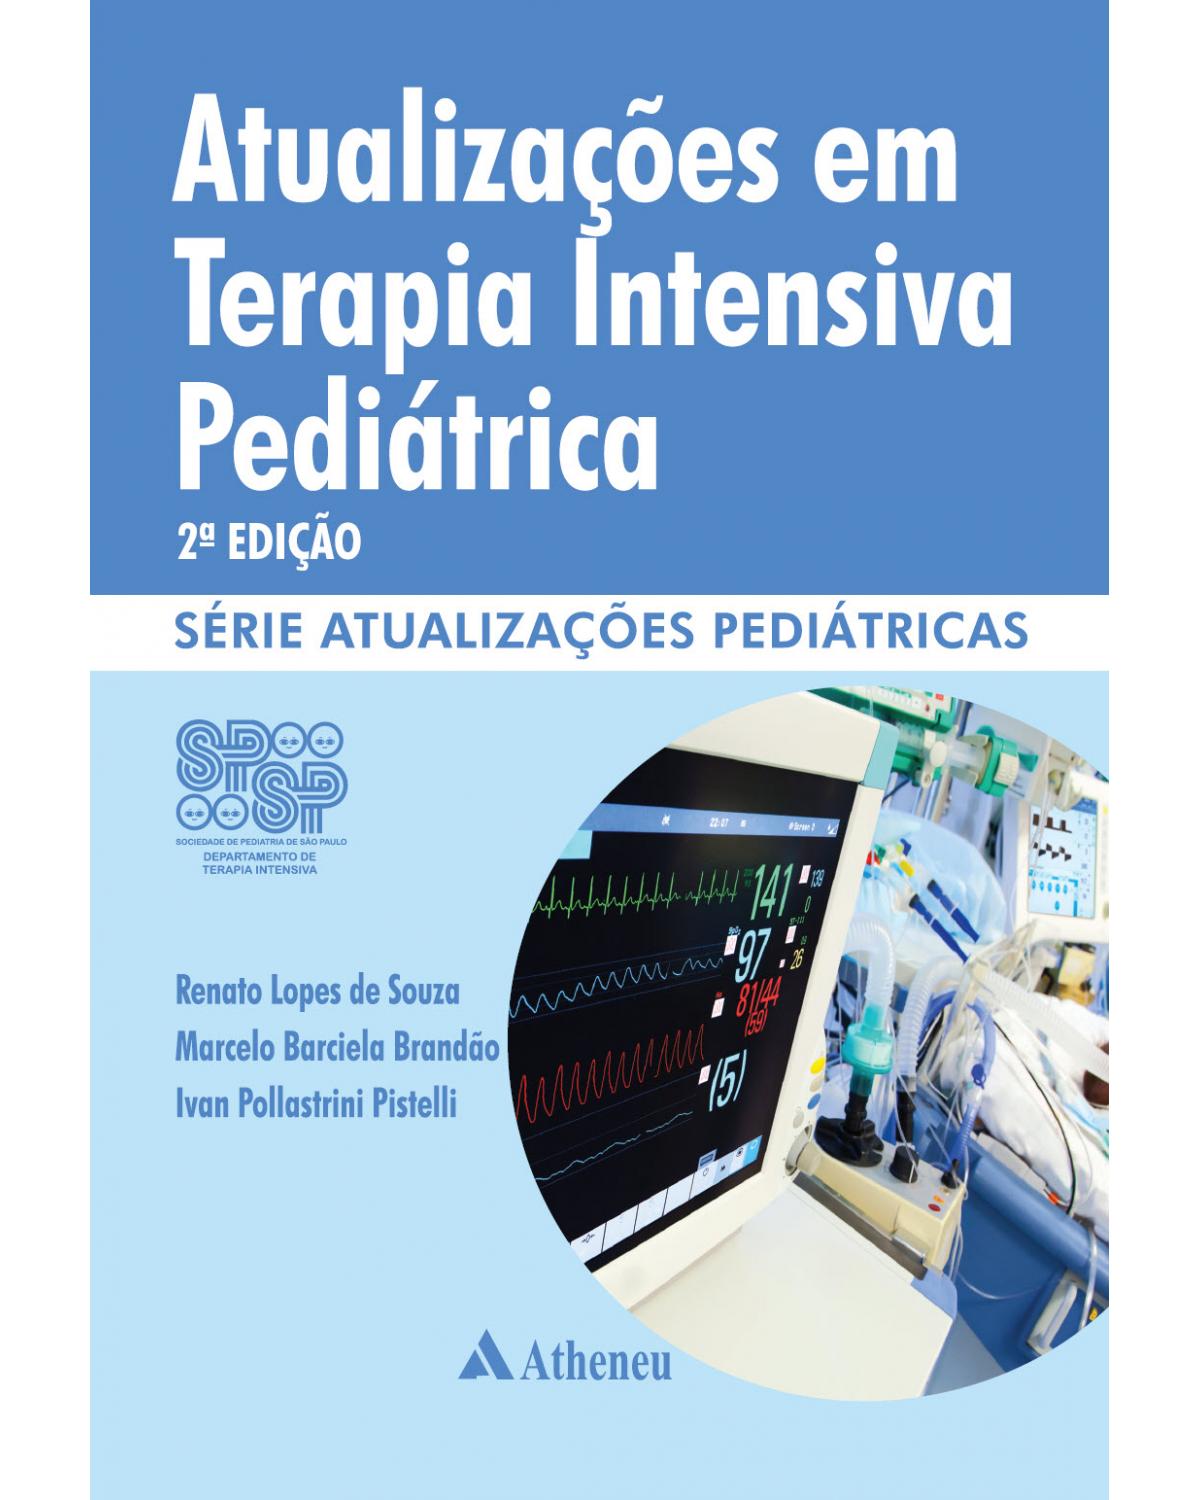 Atualizações em terapia intensiva pediátrica - 2ª Edição | 2014